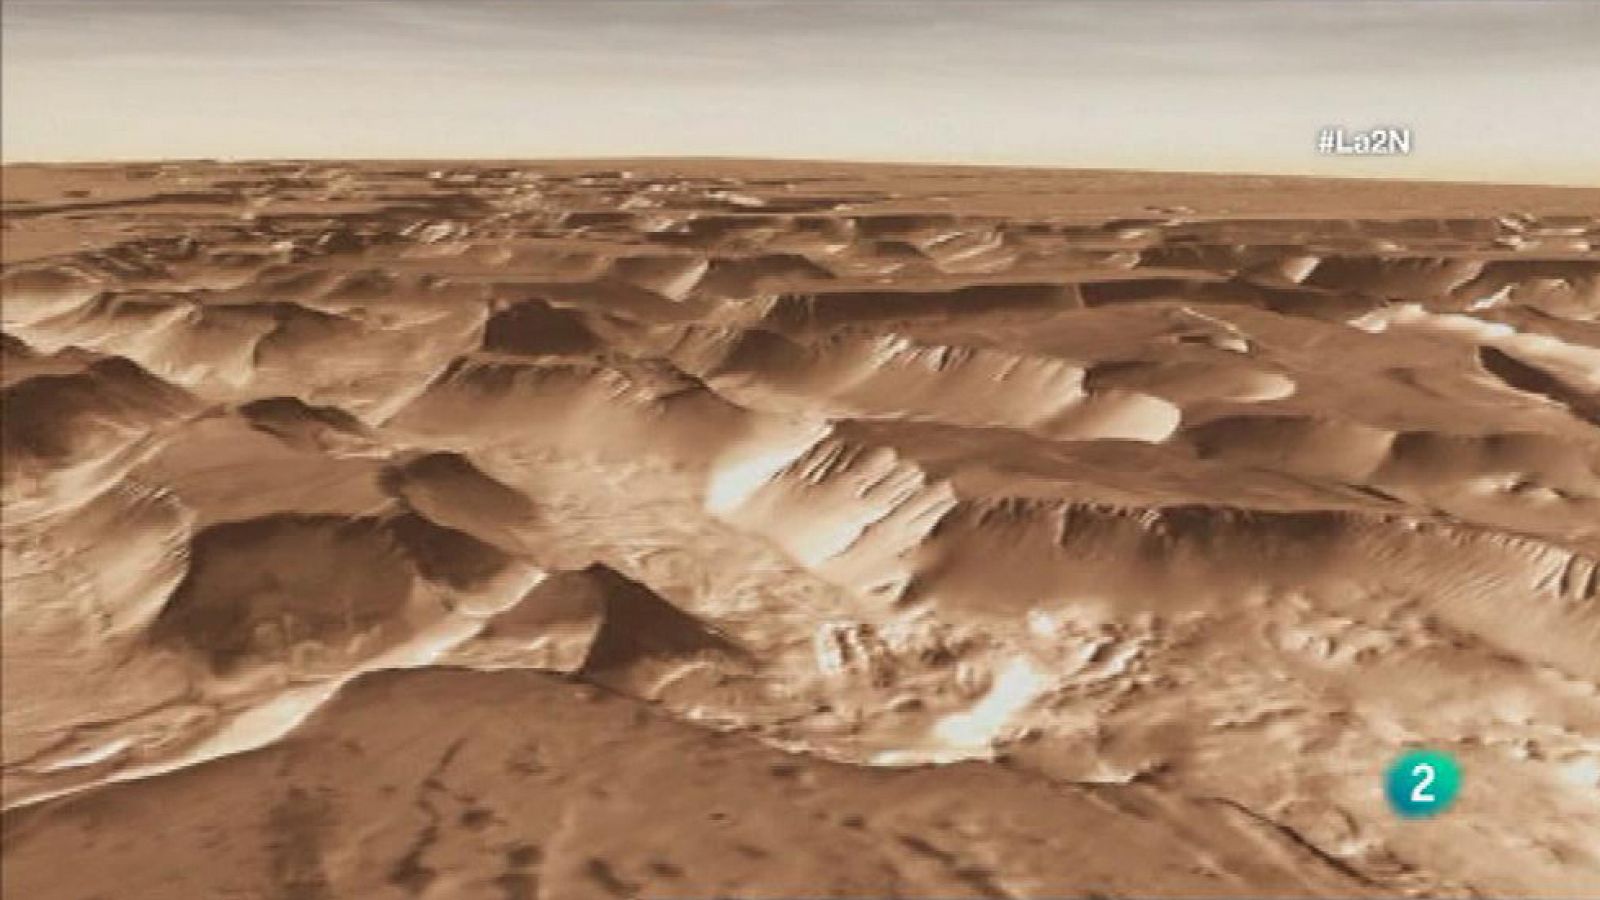 La 2 Noticias - Estudiar Atacama para entender Marte